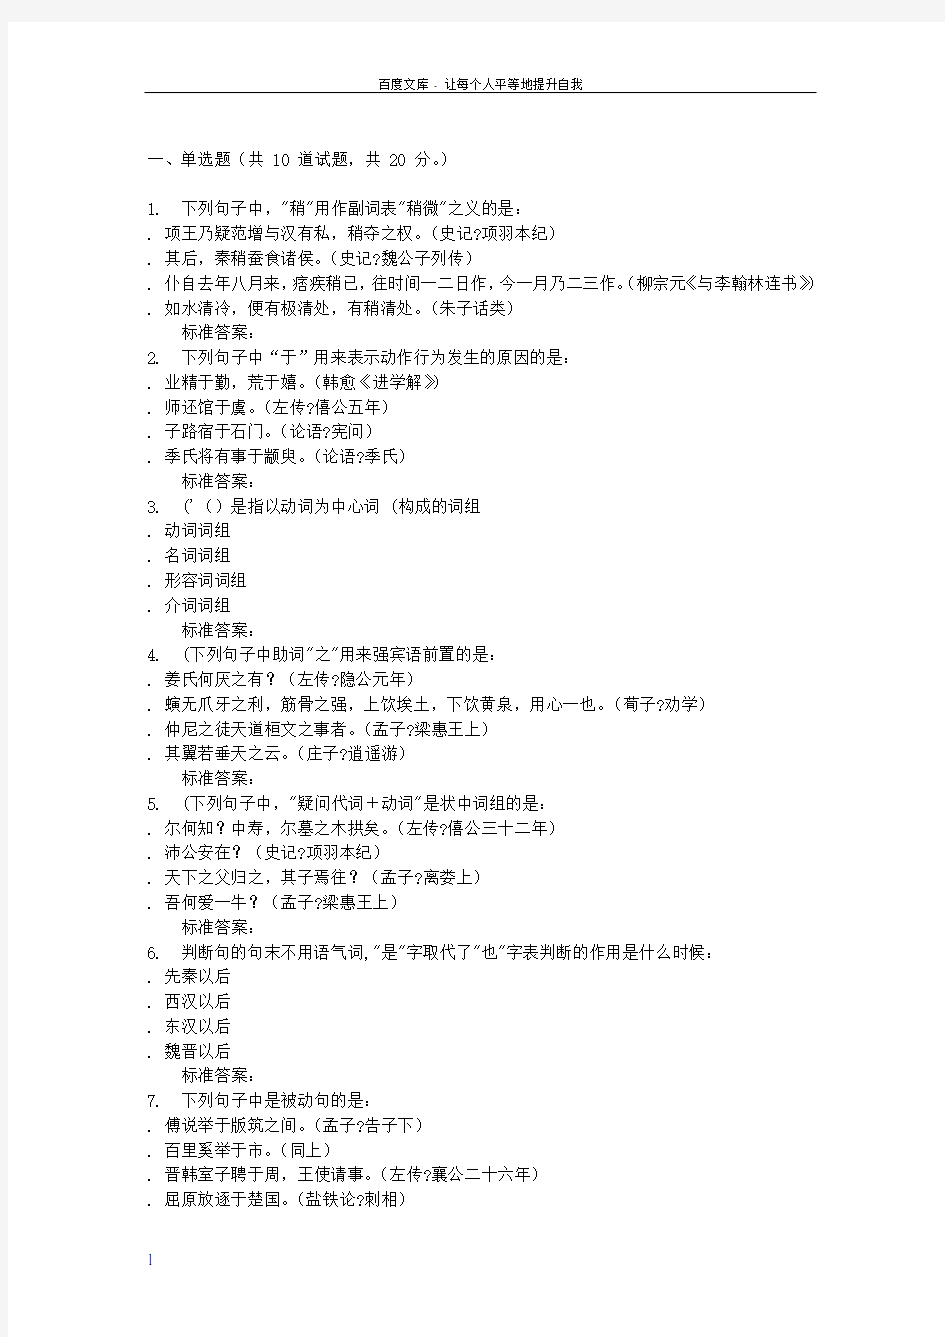 16秋福建师范大学古今汉语语法的异同在线作业一